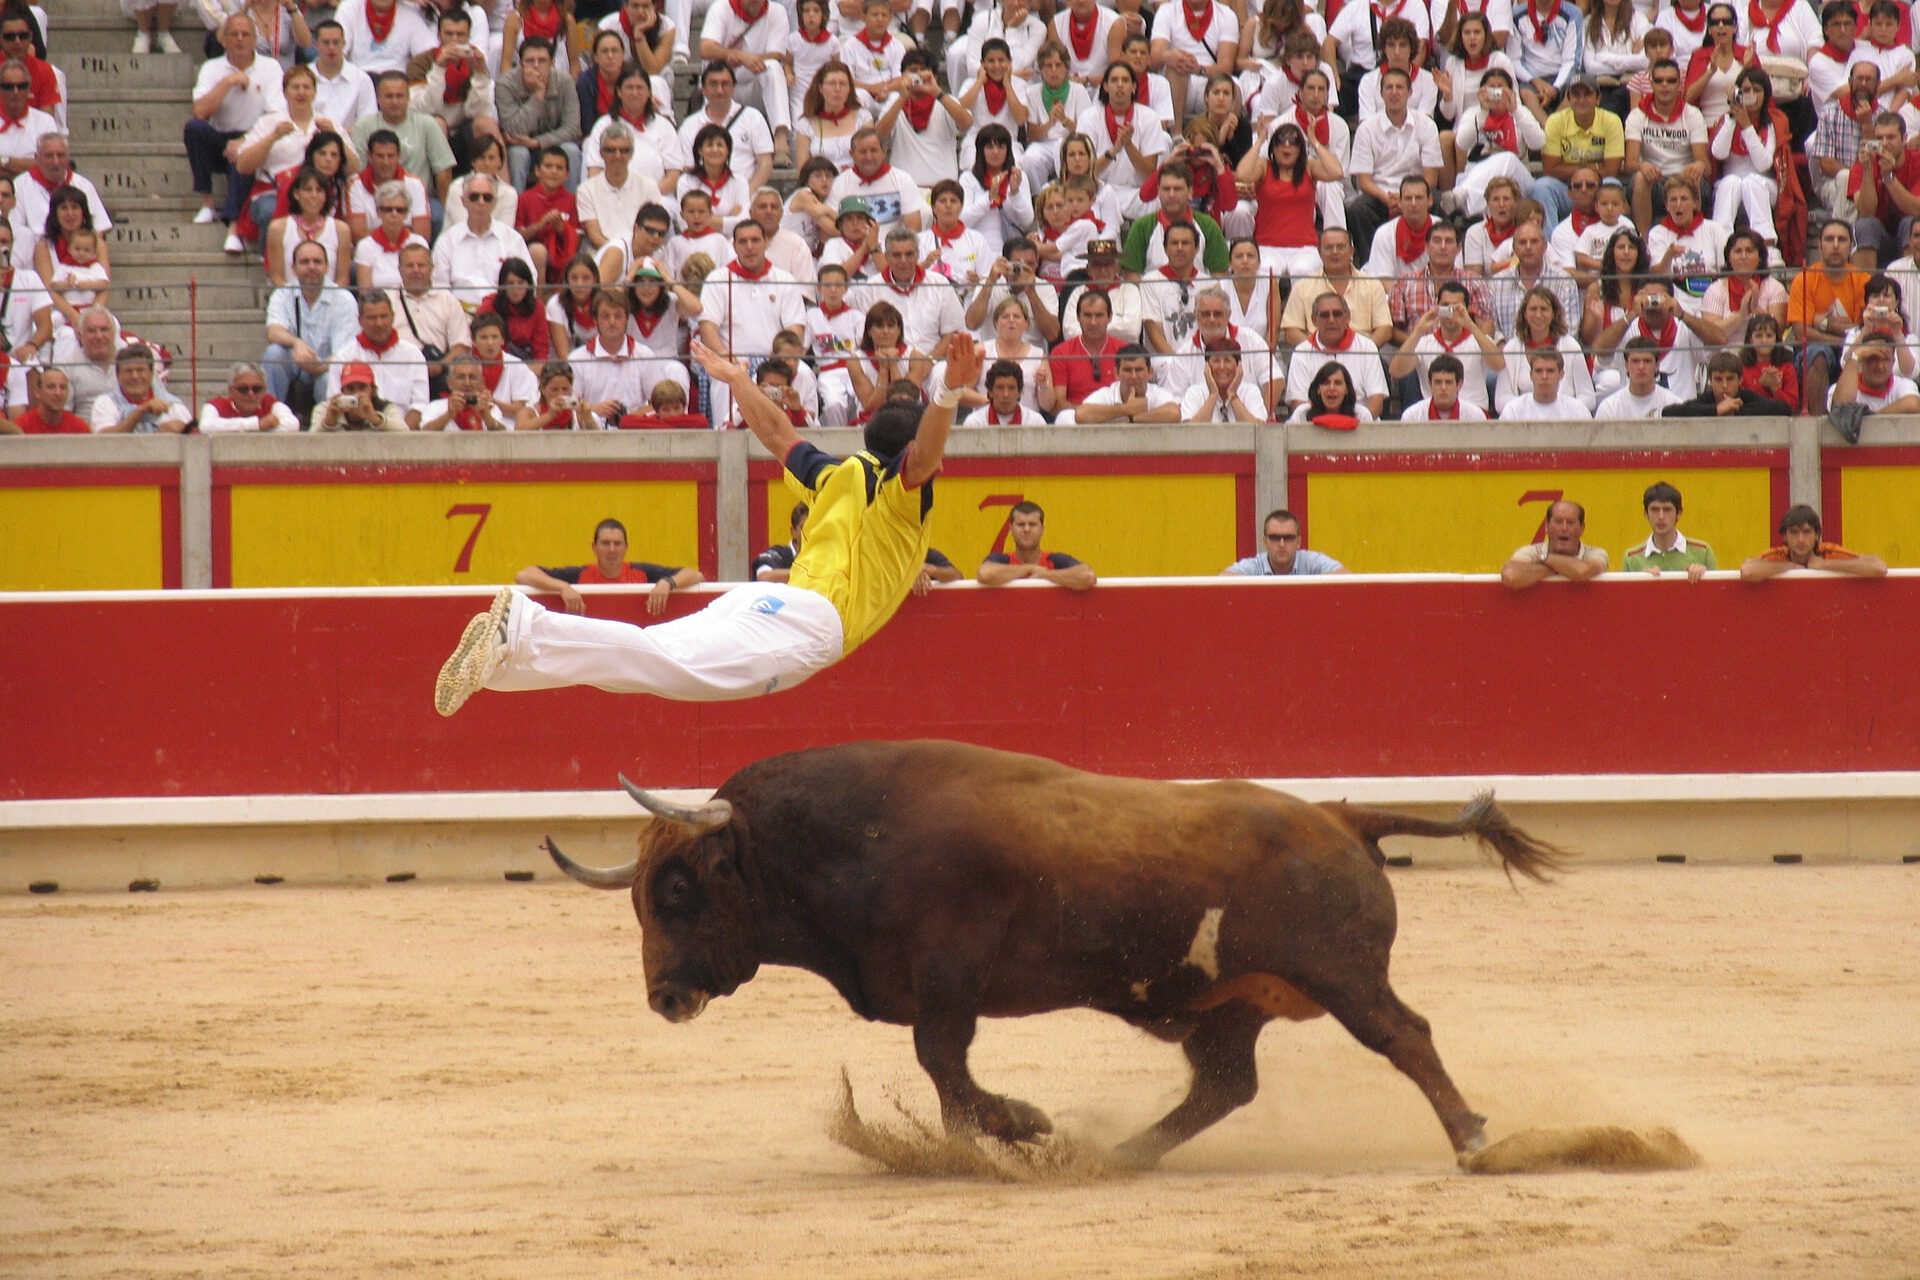 Seguro de Festejos Taurinos. Un Joven salta sobre un toro en una plaza abarrotada.